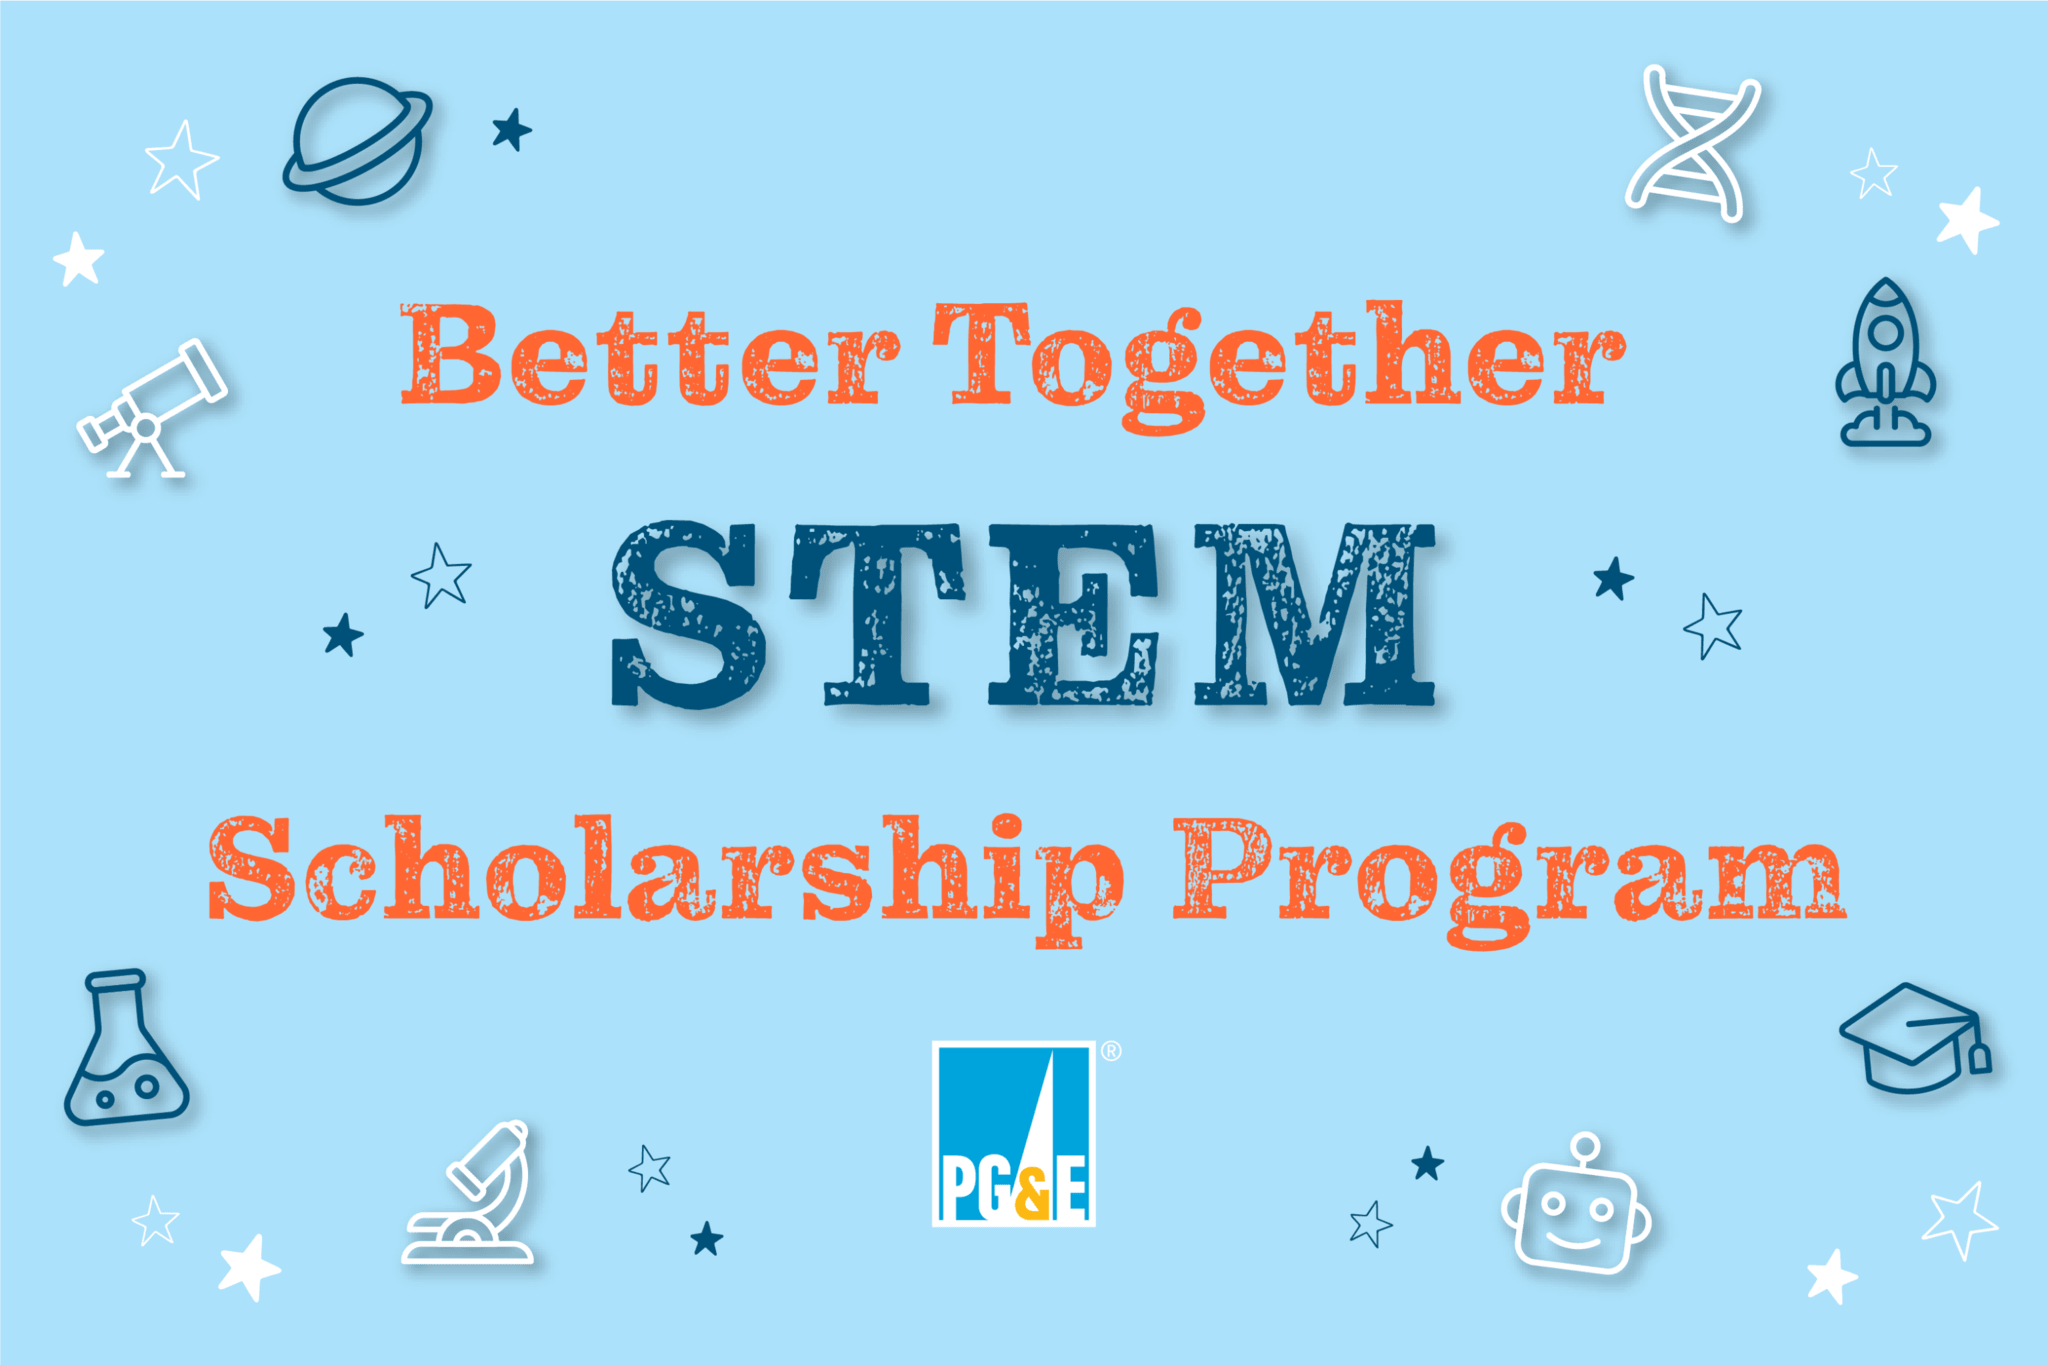 pge_better-together-stem-scholarships image